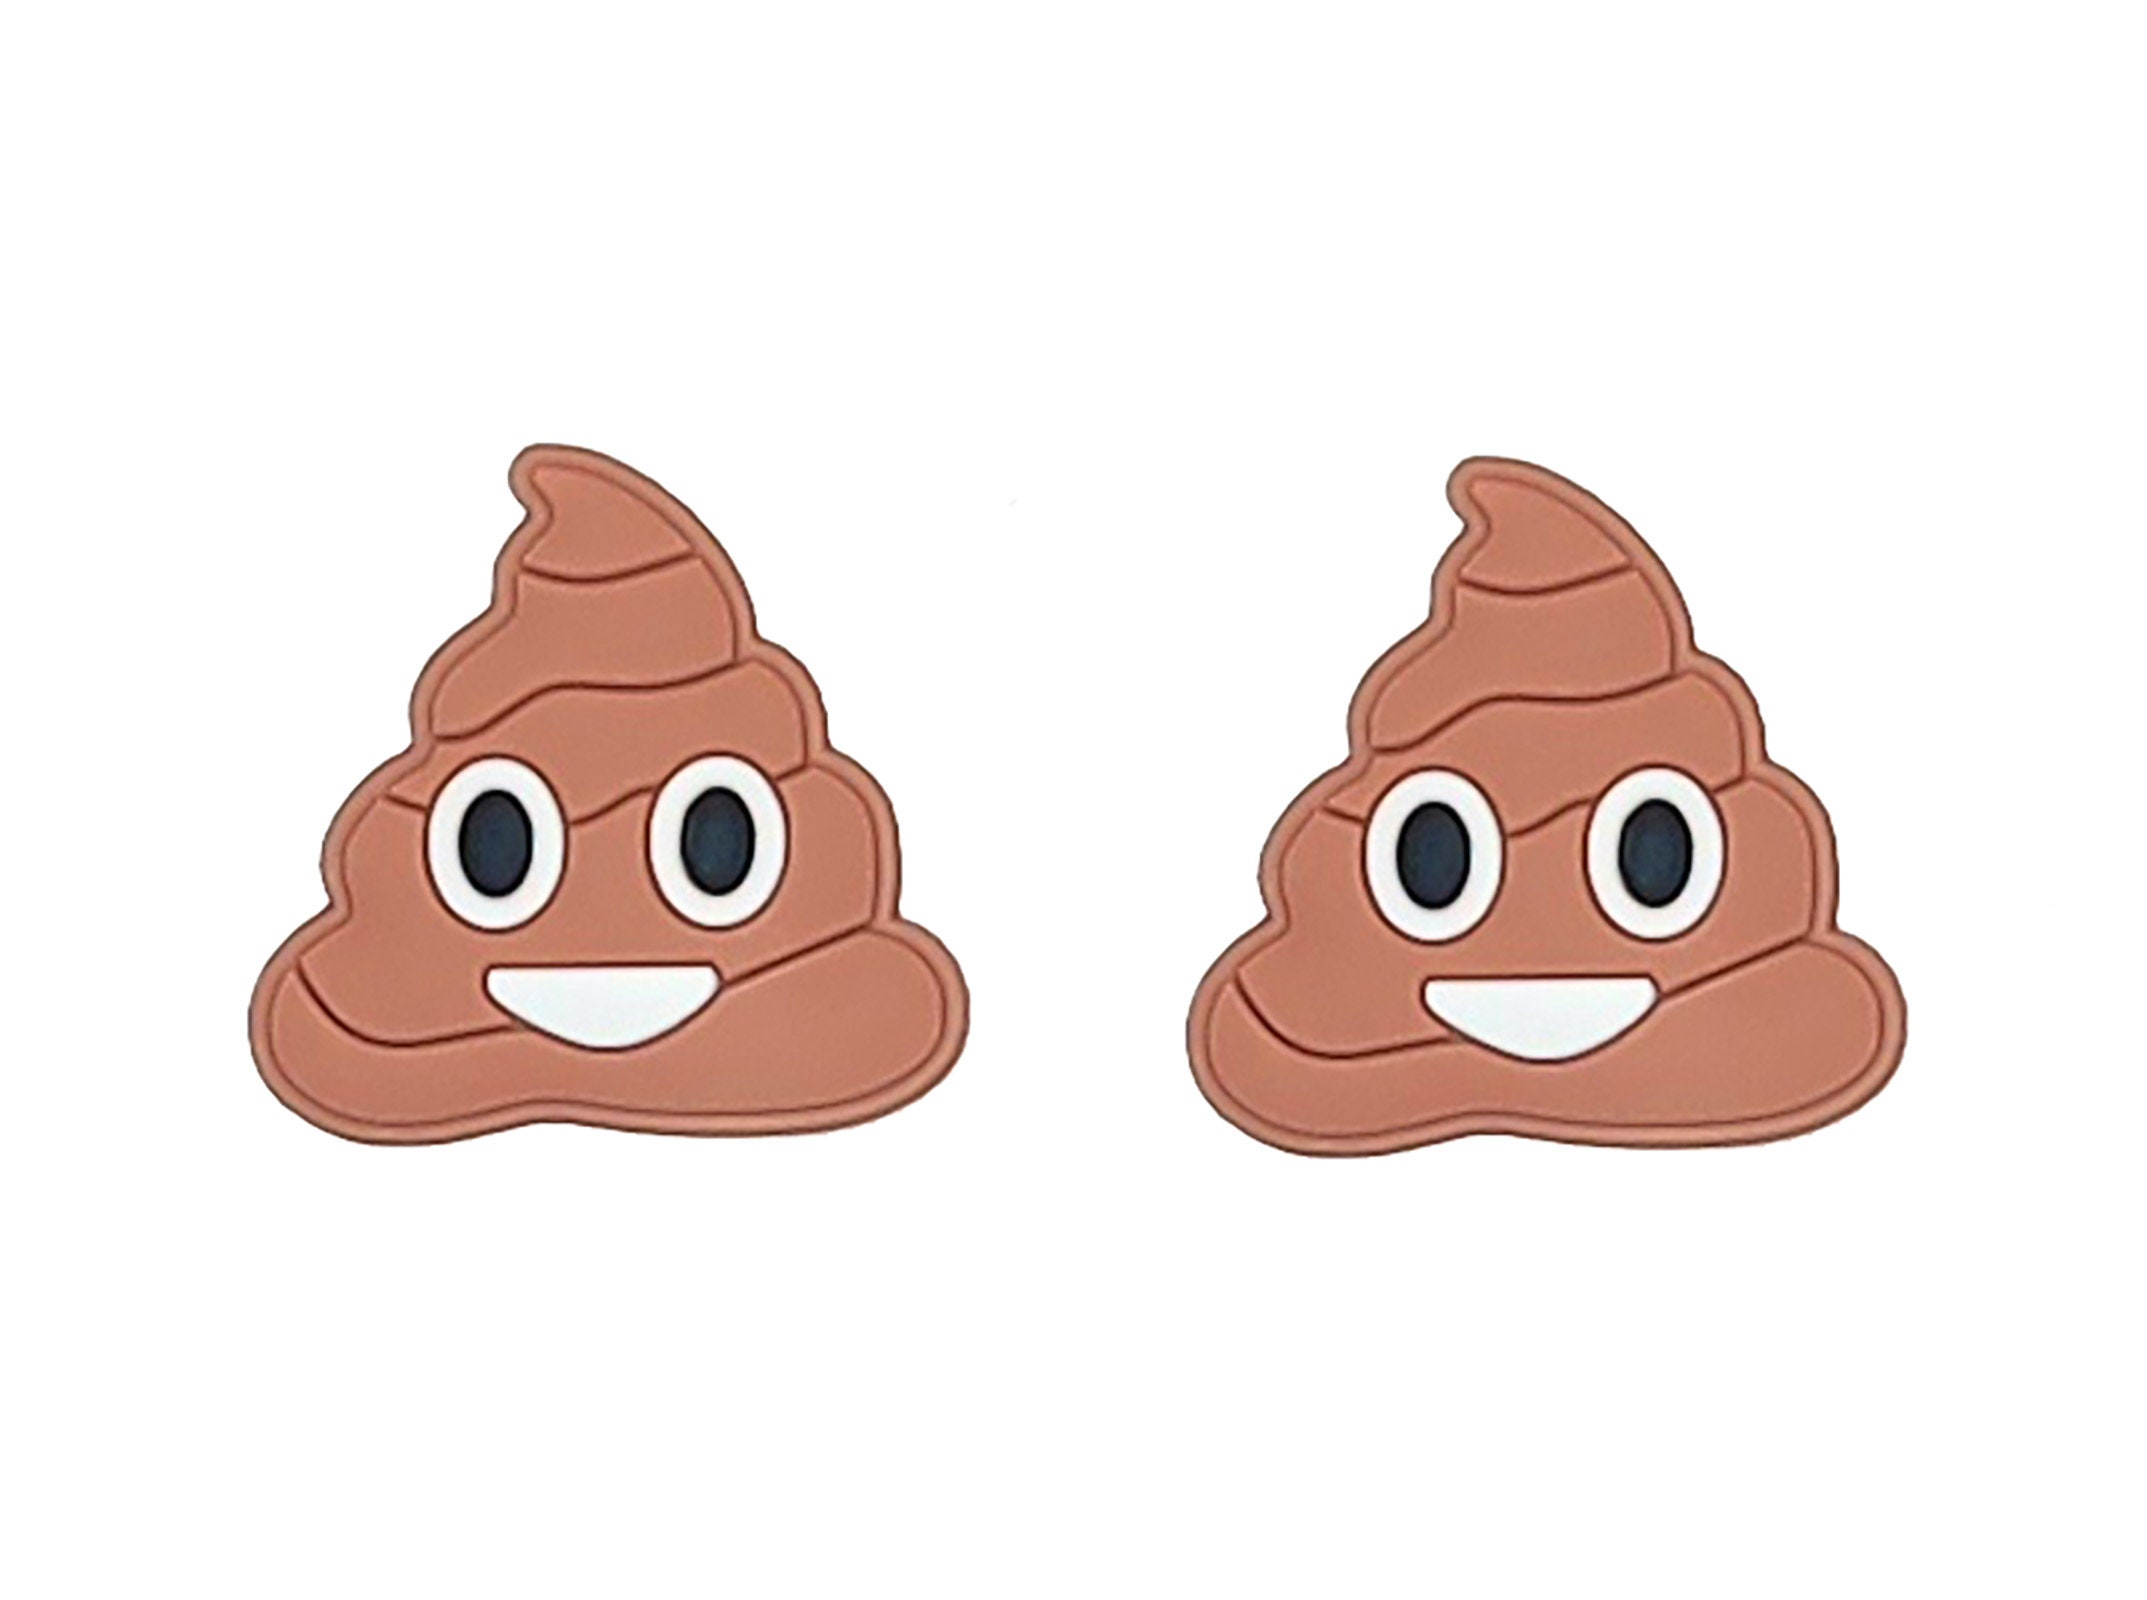 Sparkly Brown Poop Keyring / Smiling Pile of Poo Bag Tag / Poo Shaped  Keyring / Poo Shaped Bag Tag / Novelty Poo Keyring / Poop Joke Keyring 